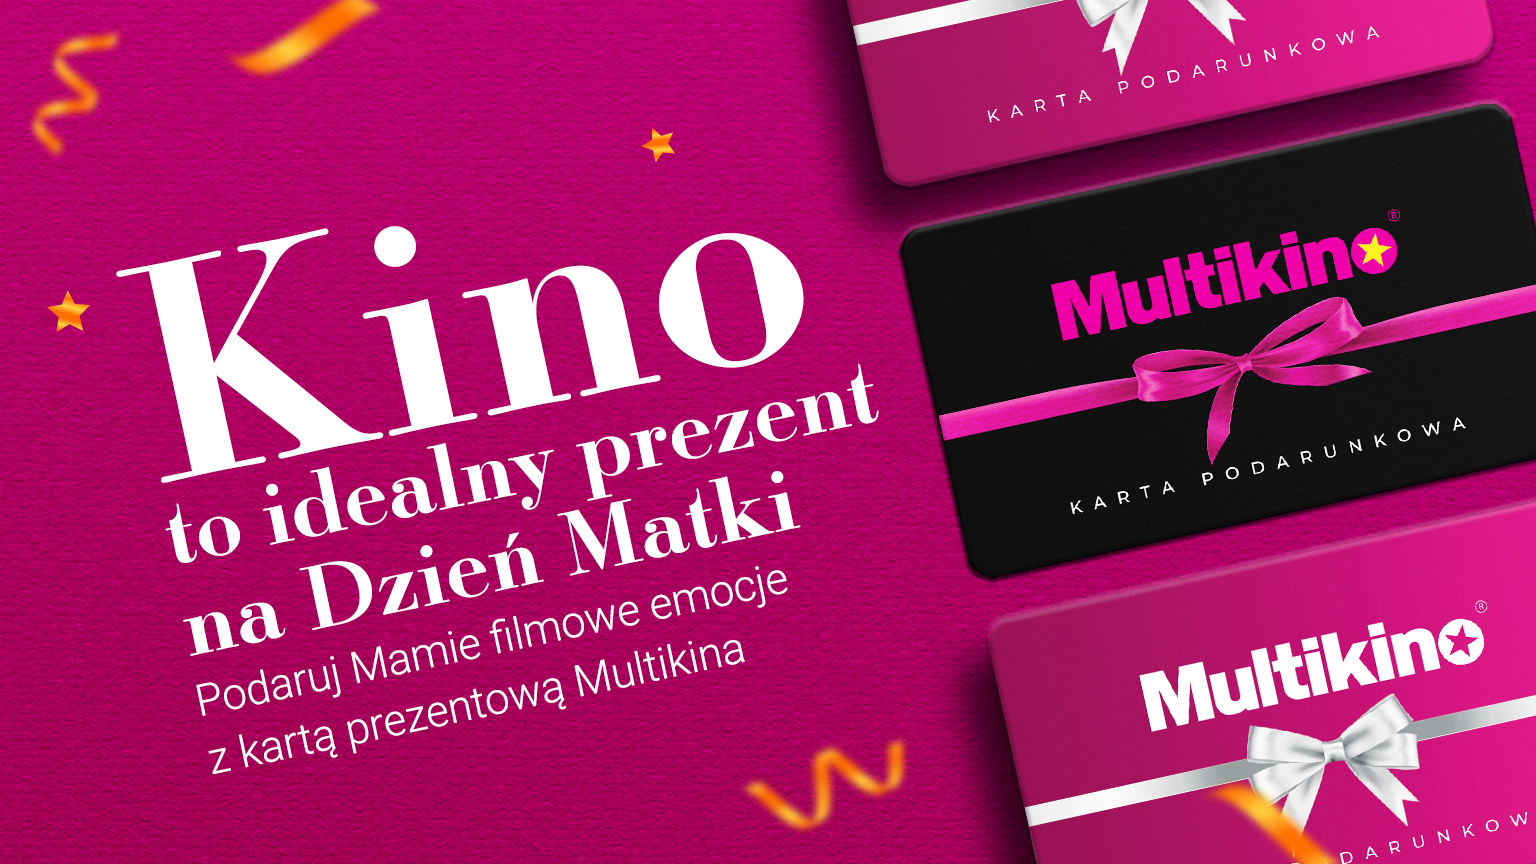 26 maja zabierz mamę do Multikino Polska !